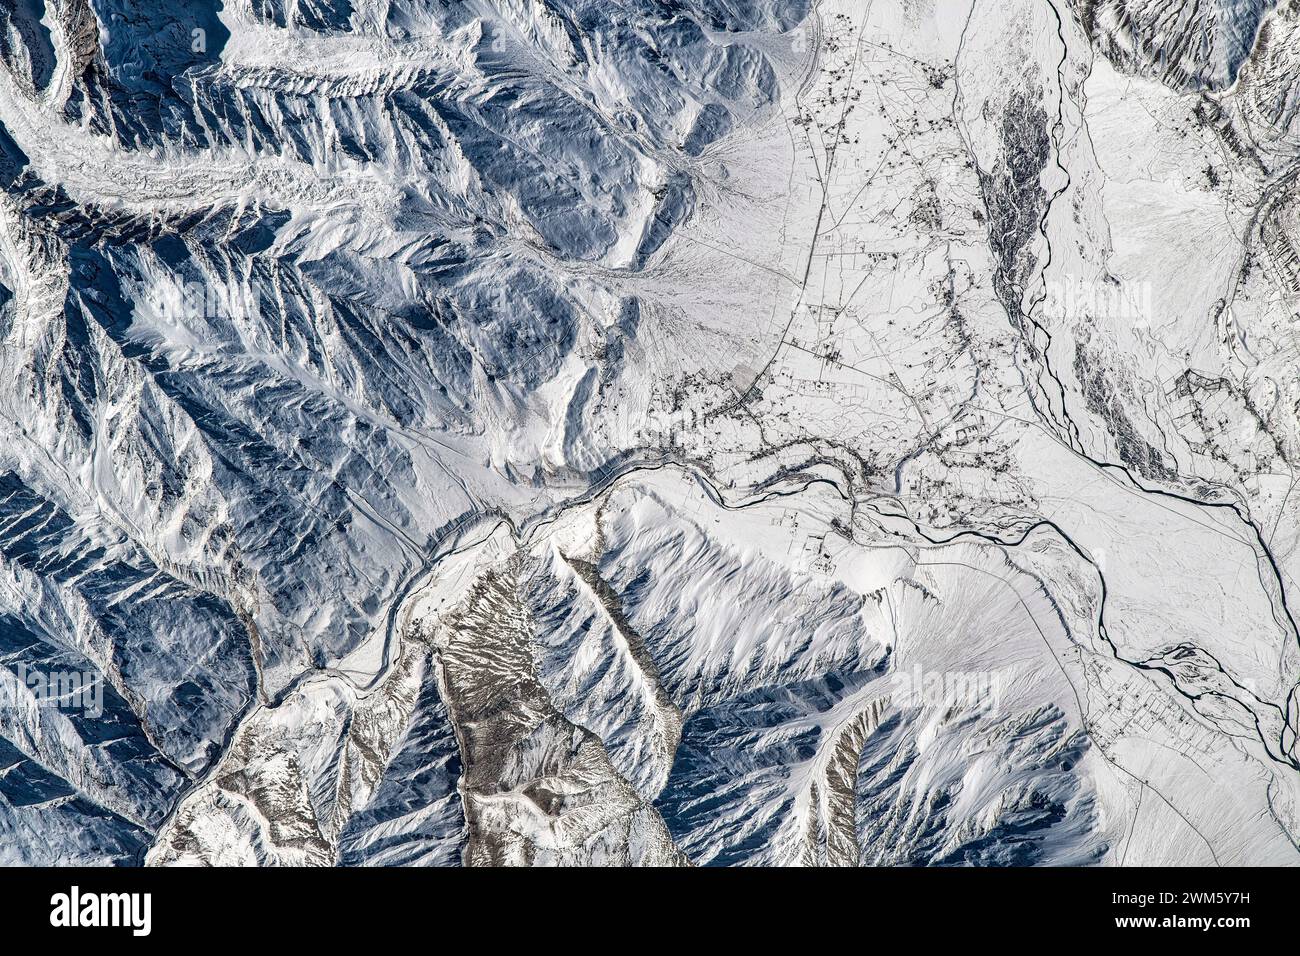 Land Feature in der Nähe von Ladakh in Indien. Digitale Bildverbesserung durch die NASA Stockfoto